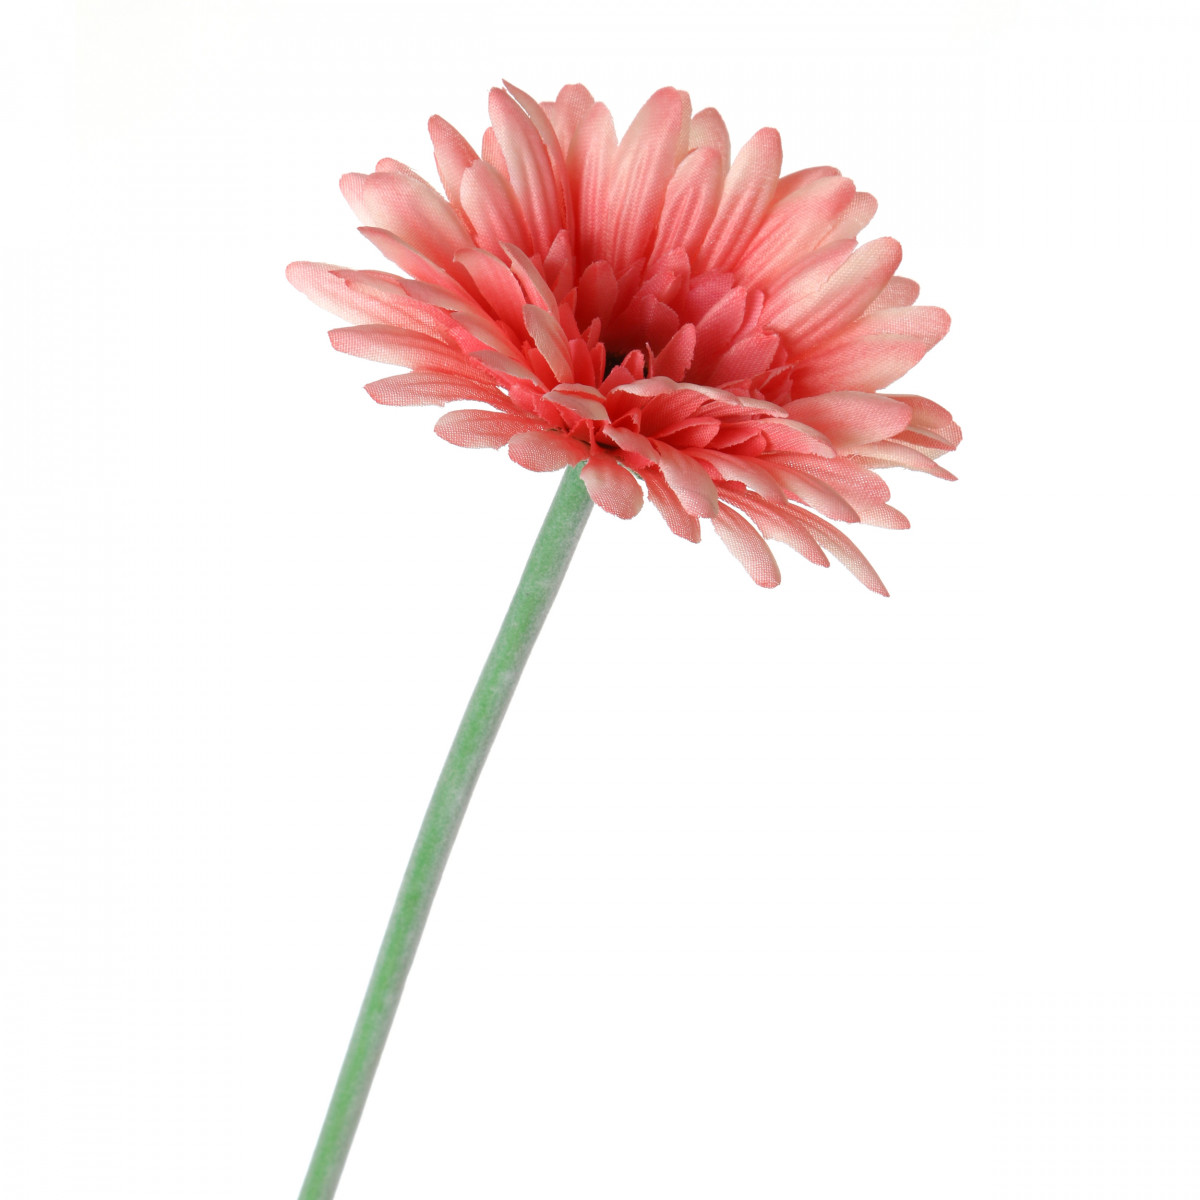 Искусственный цветок Anselm  (60 см), размер 60 см arm302979 Искусственный цветок Anselm  (60 см) - фото 1